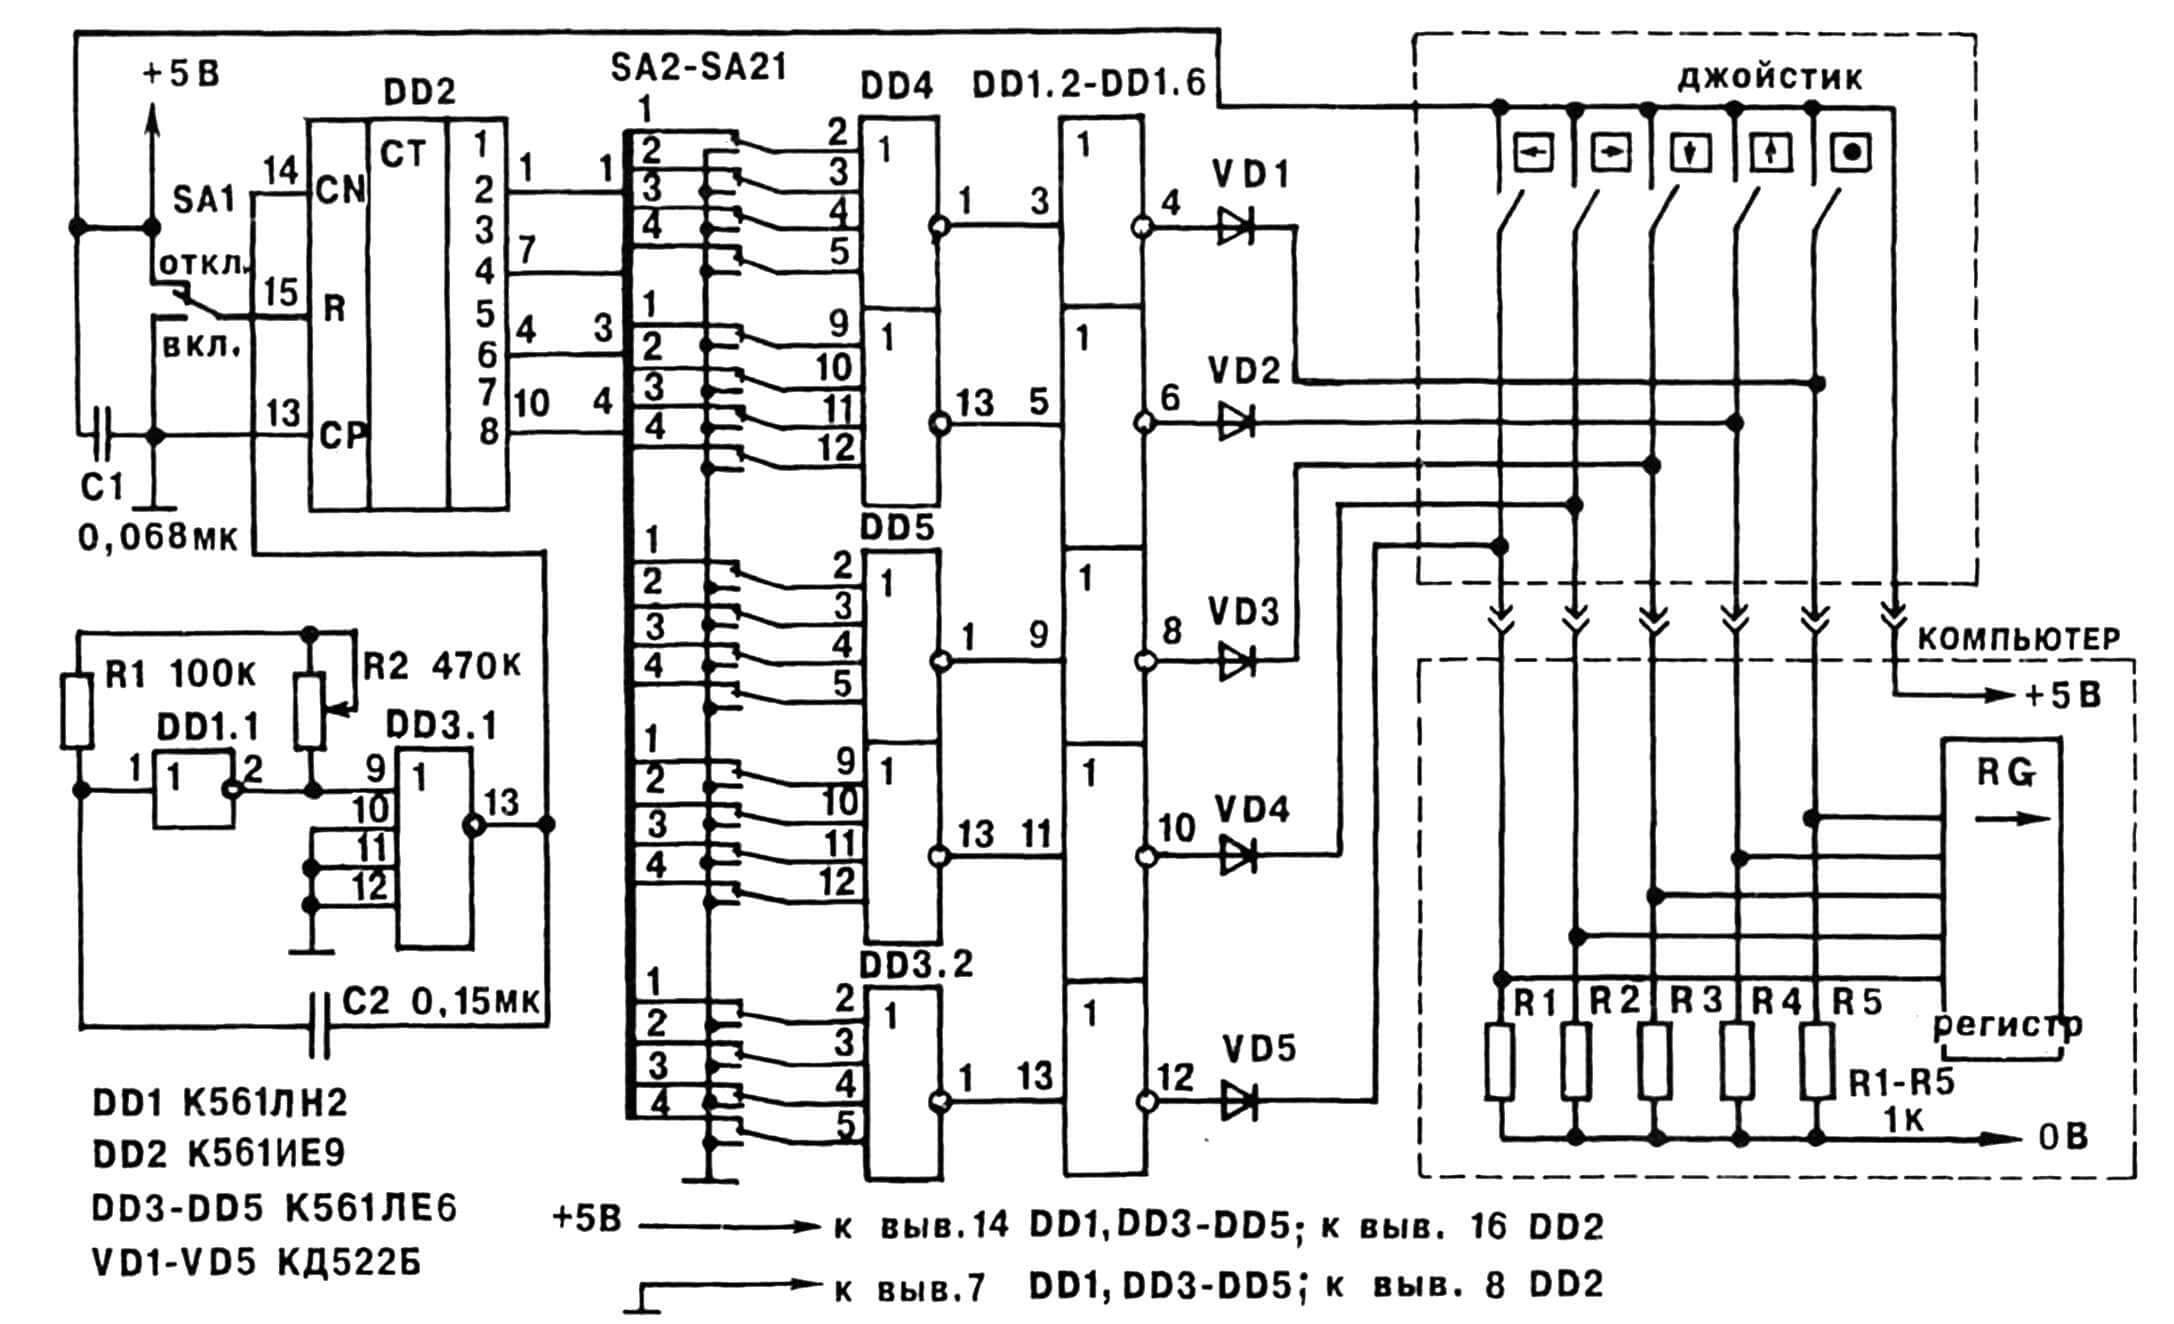 Рис. 2. Принципиальная электрическая схема синтезатора игровых ситуаций с джойстиком, рассчитанным на типовое подключение к компьютеру.